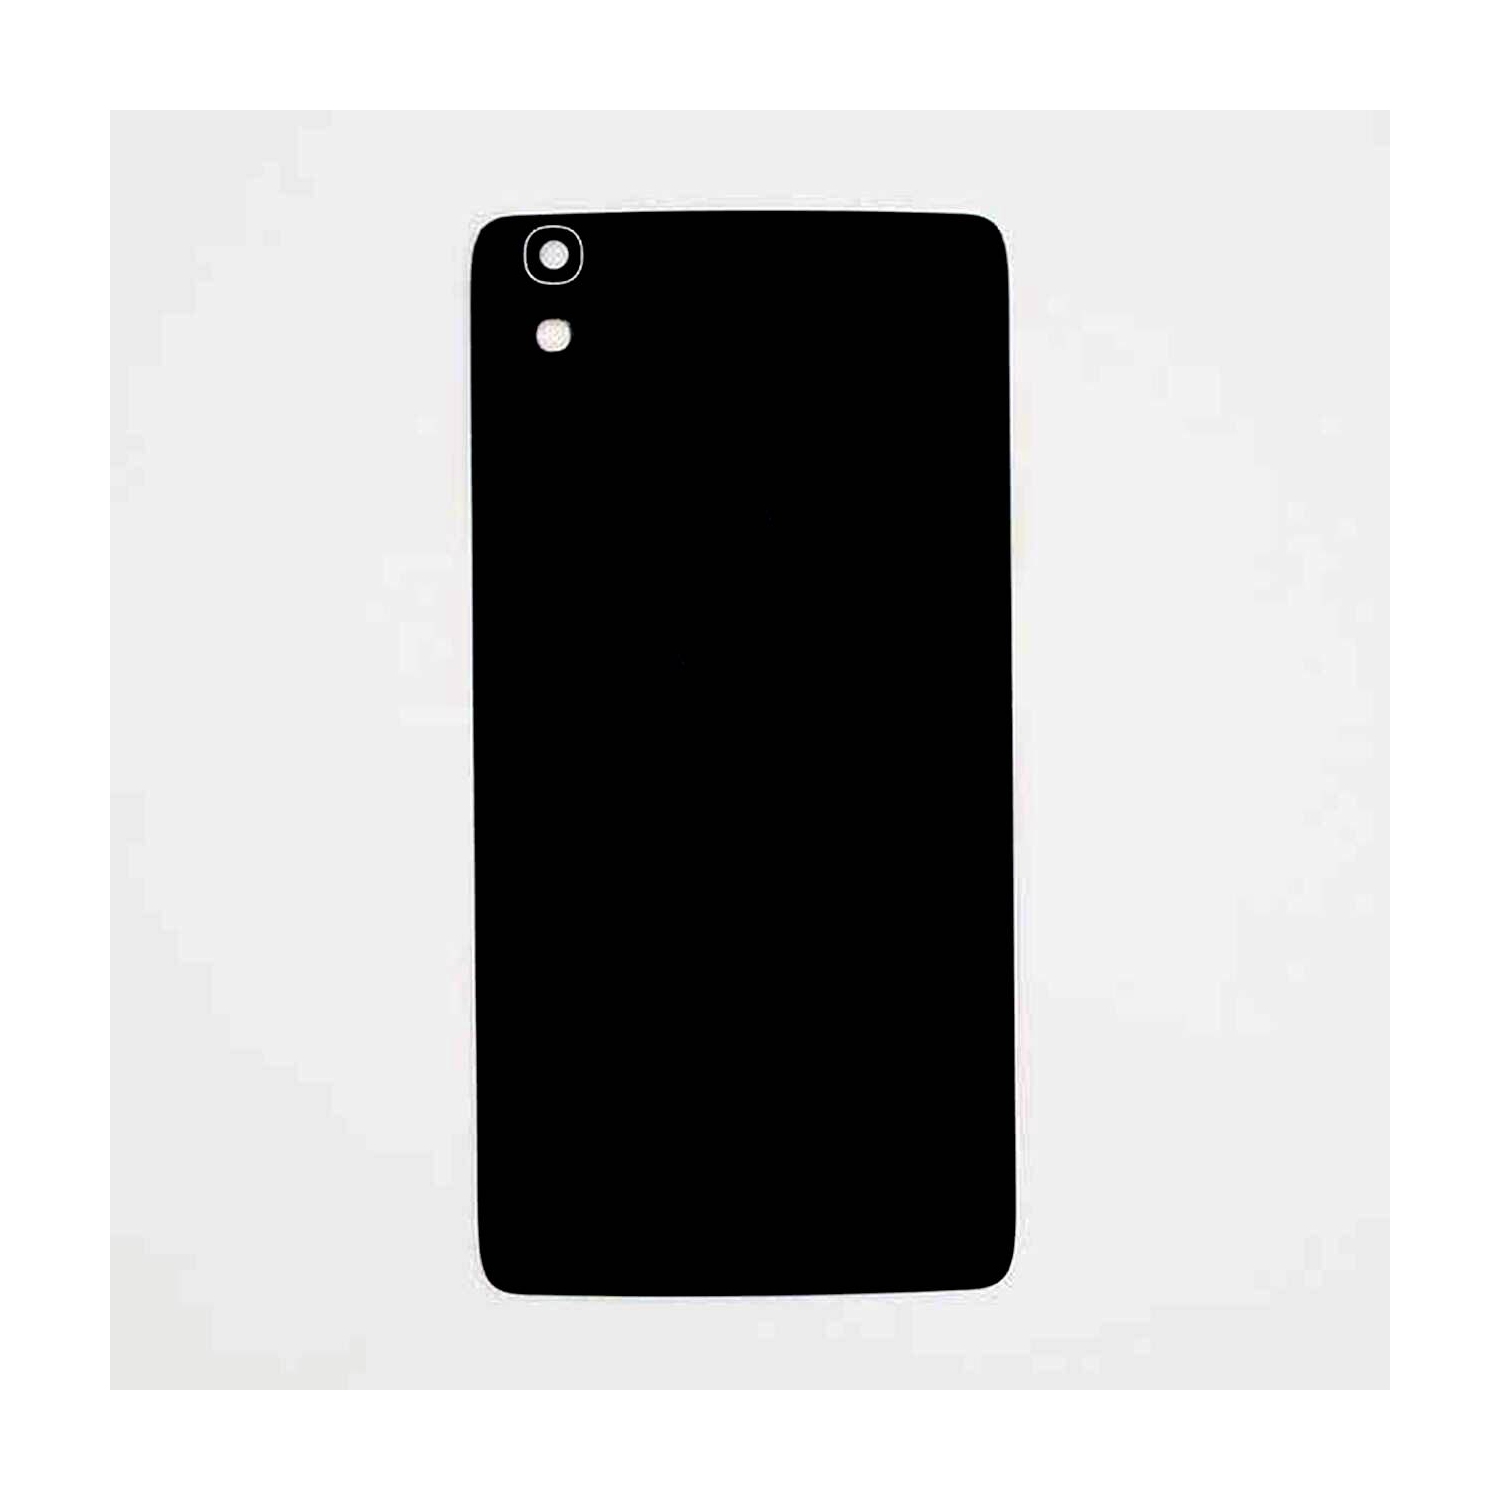 Back Battery Cover For Alcatel 6055 idol 4 6055H 6055B blackberry DTEK 50 [Pro-Mobile]